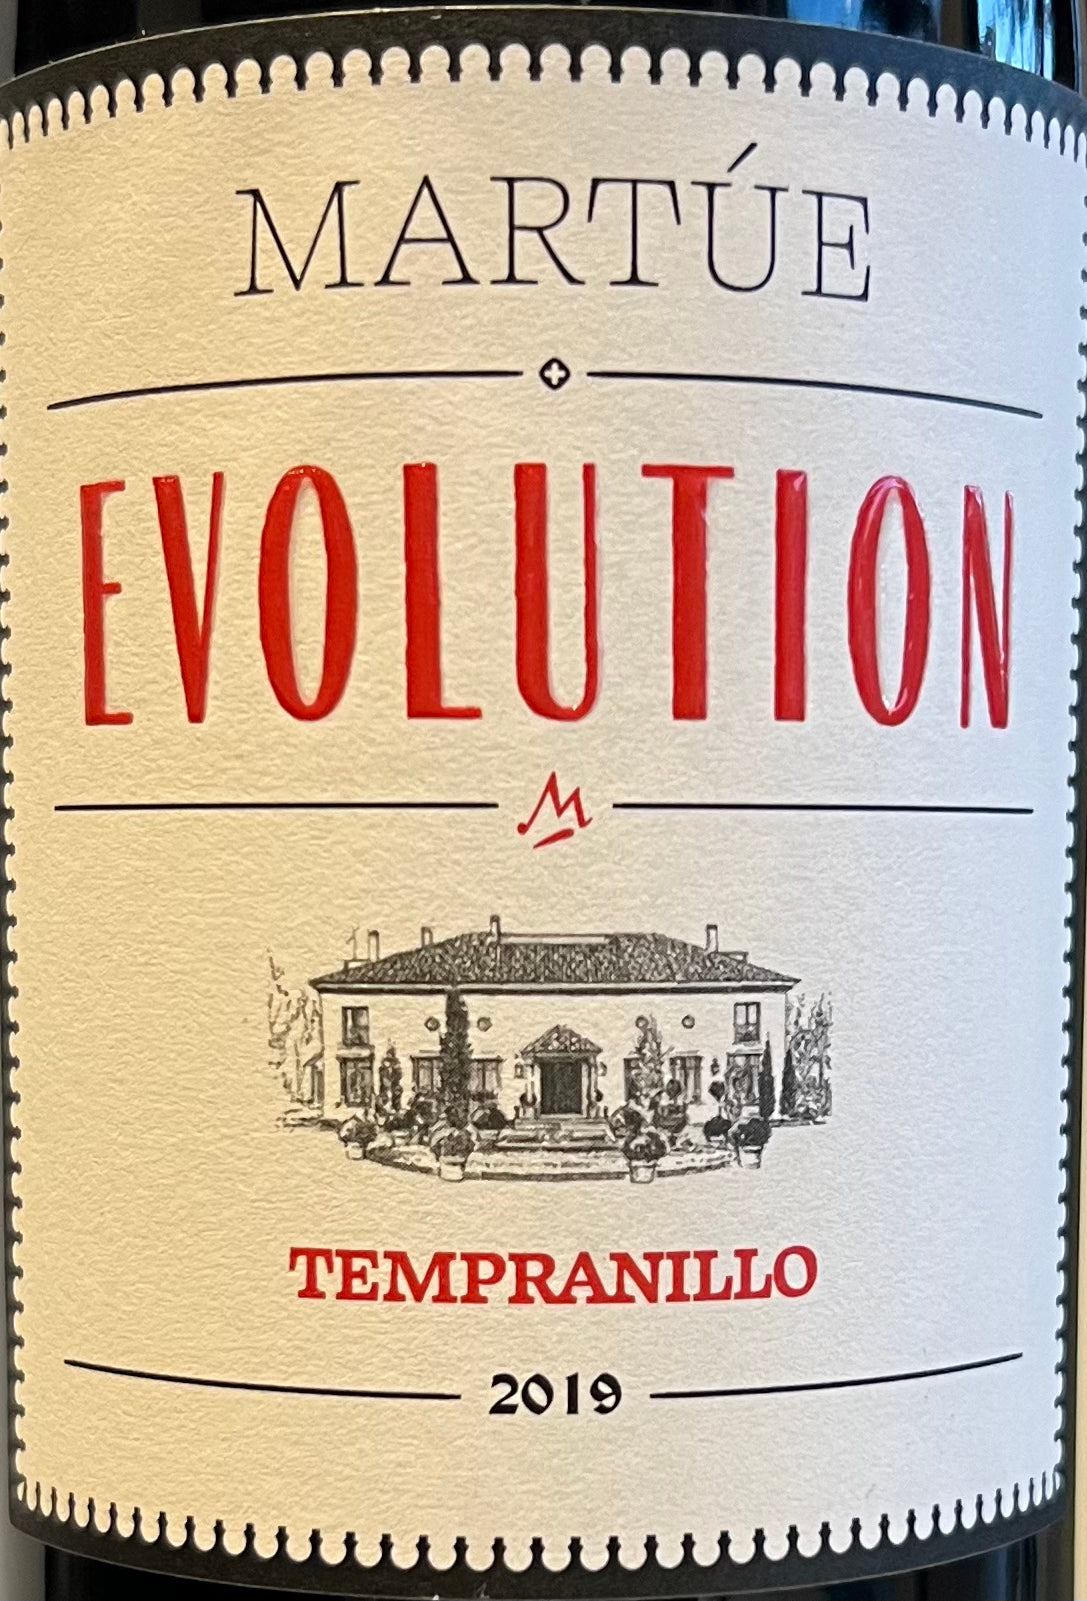 Martue 'Evolution' - Tempranillo